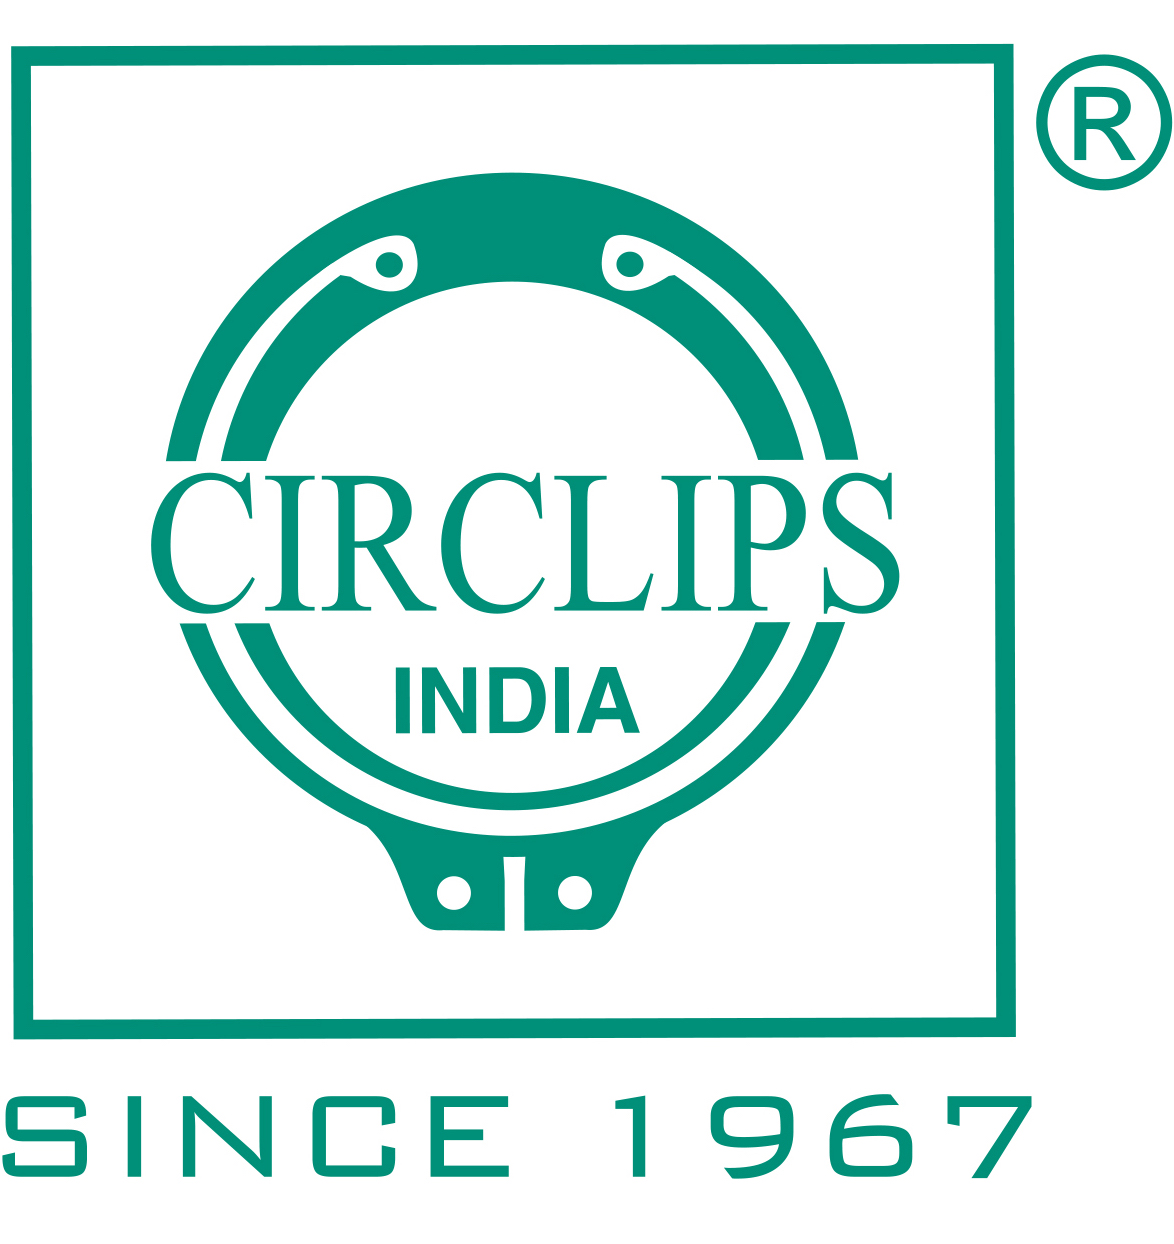 Circlips